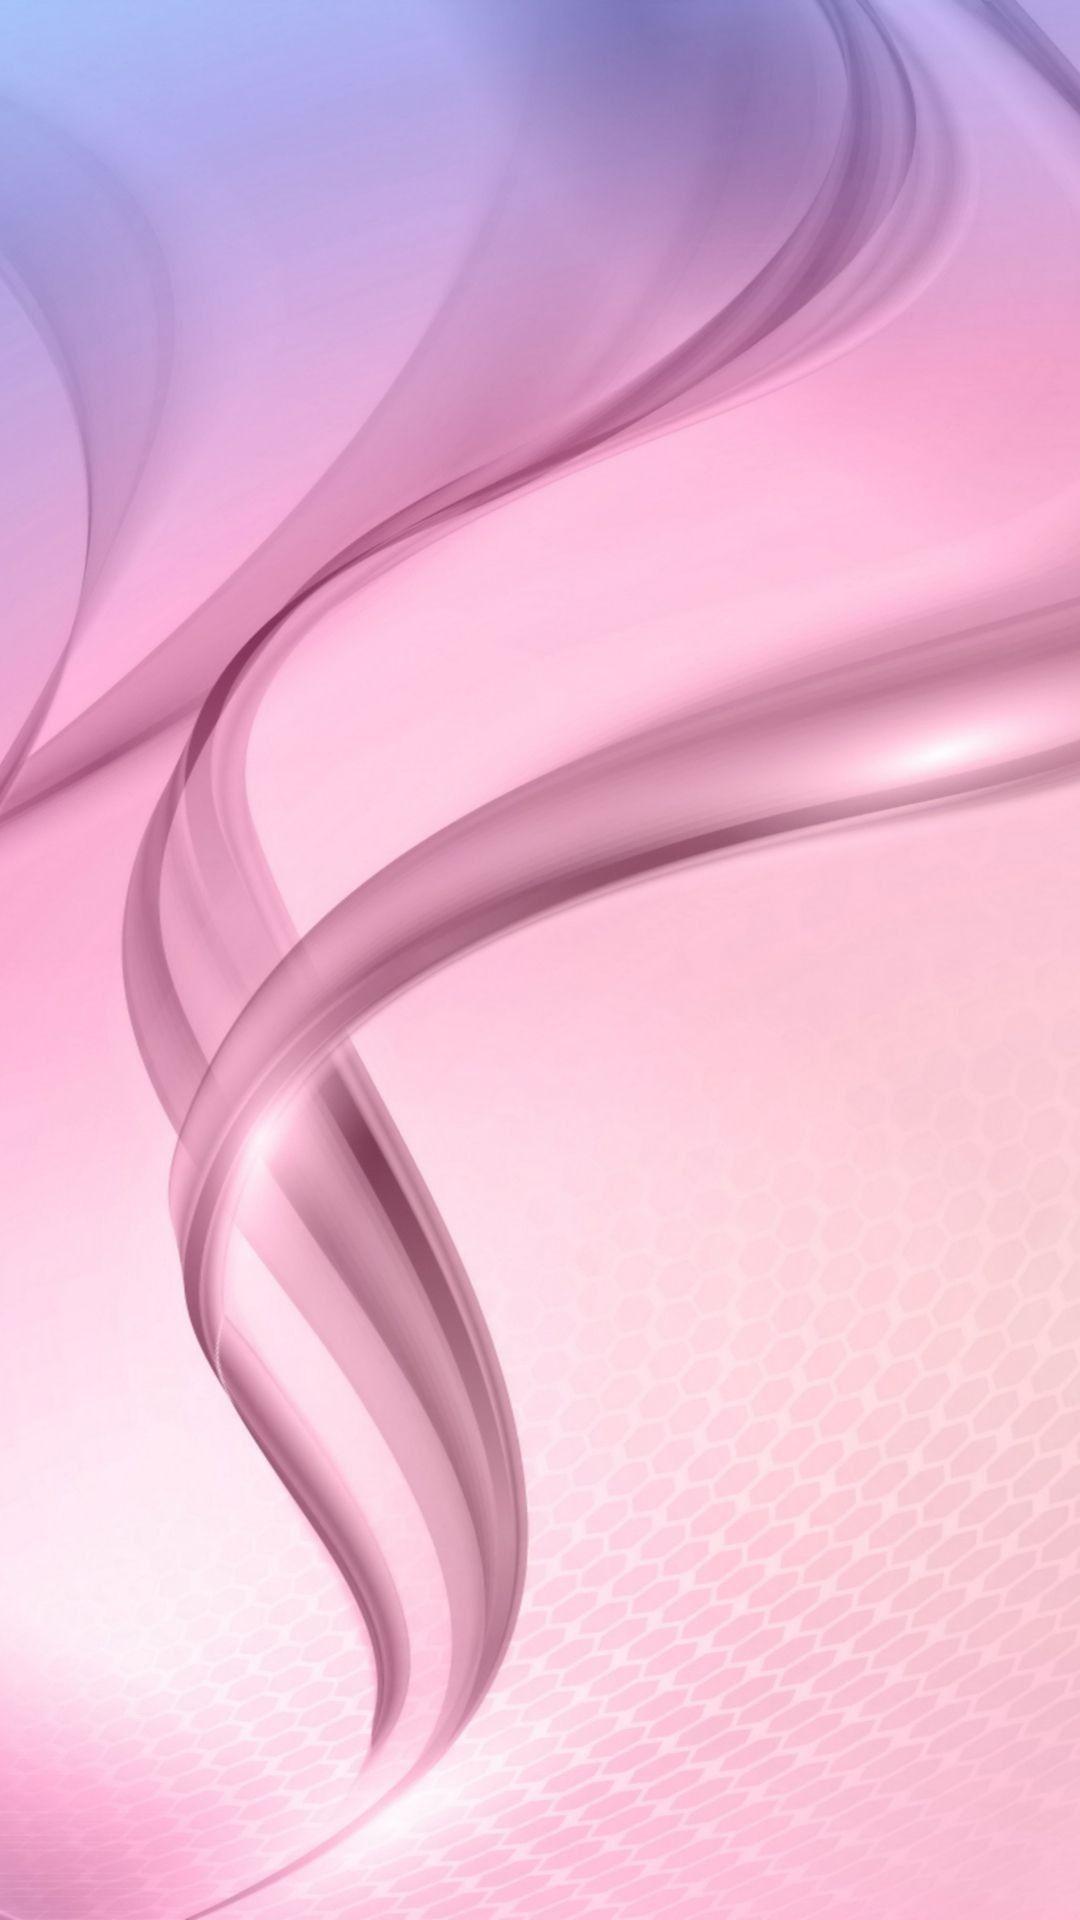 iPhone Wallpaper. Pink, Lilac, Cg artwork, Material